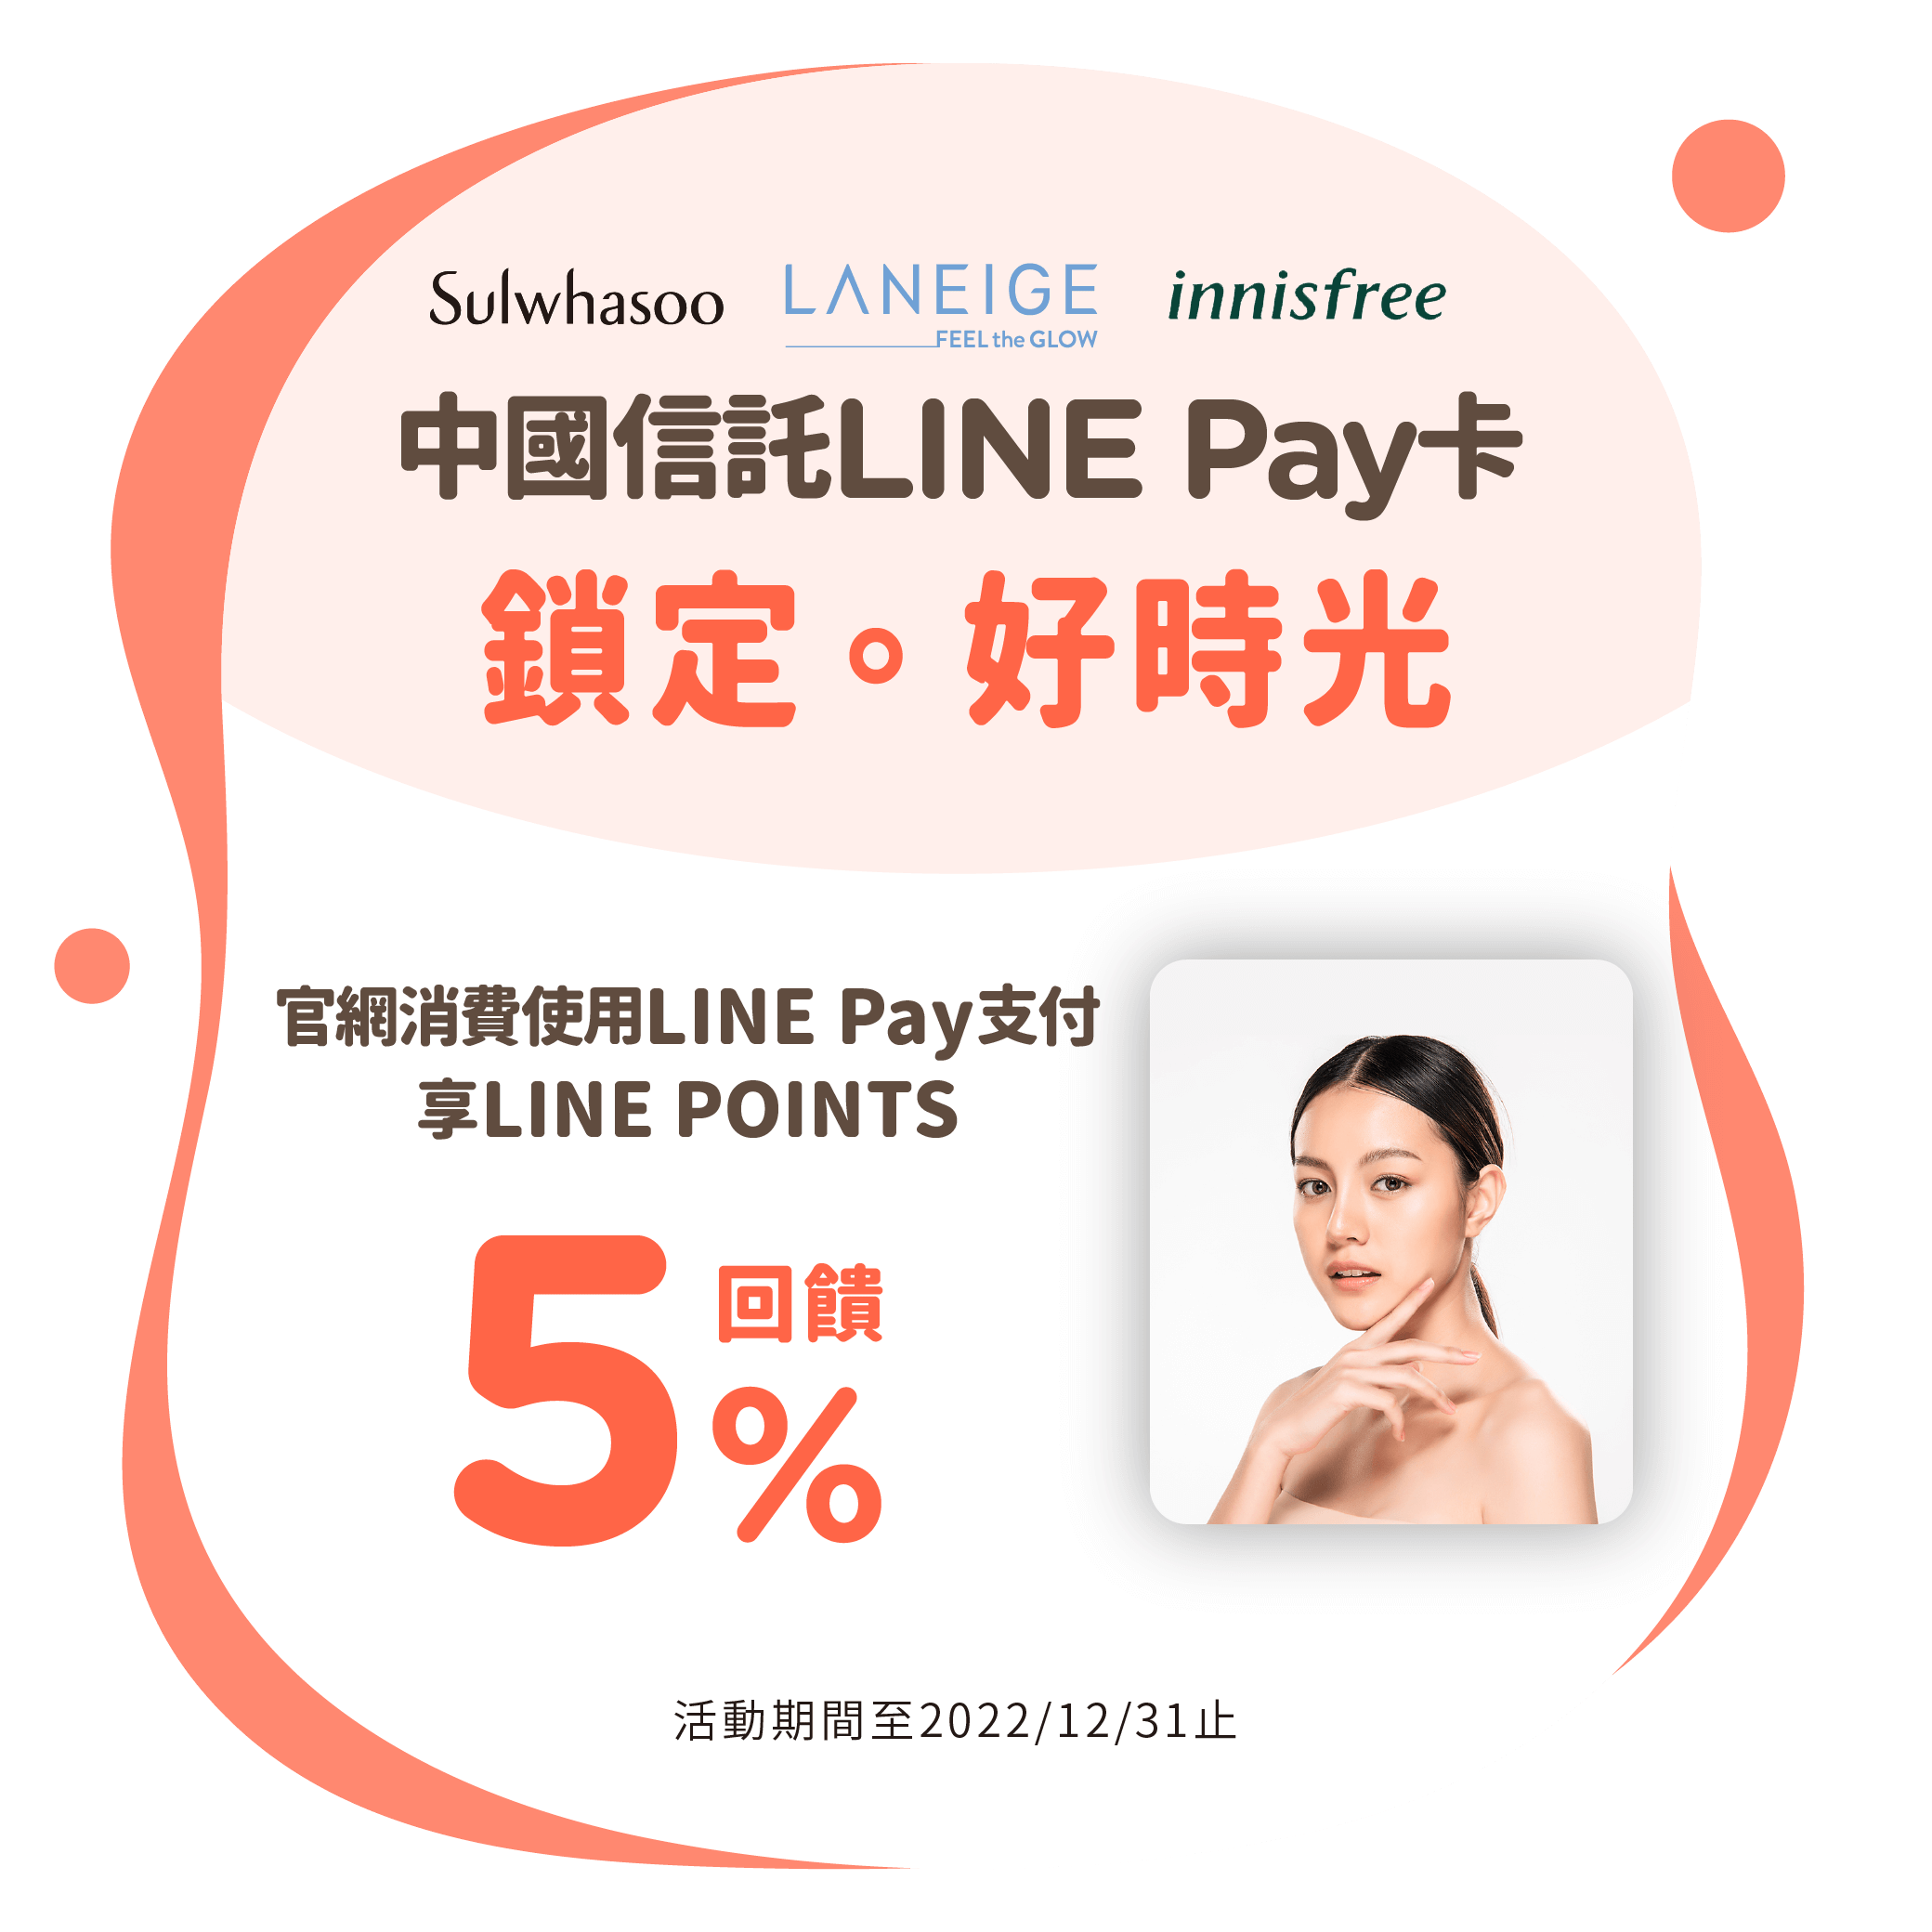 中國信託LINE Pay卡主打特店：雪花秀、蘭芝、innisfree